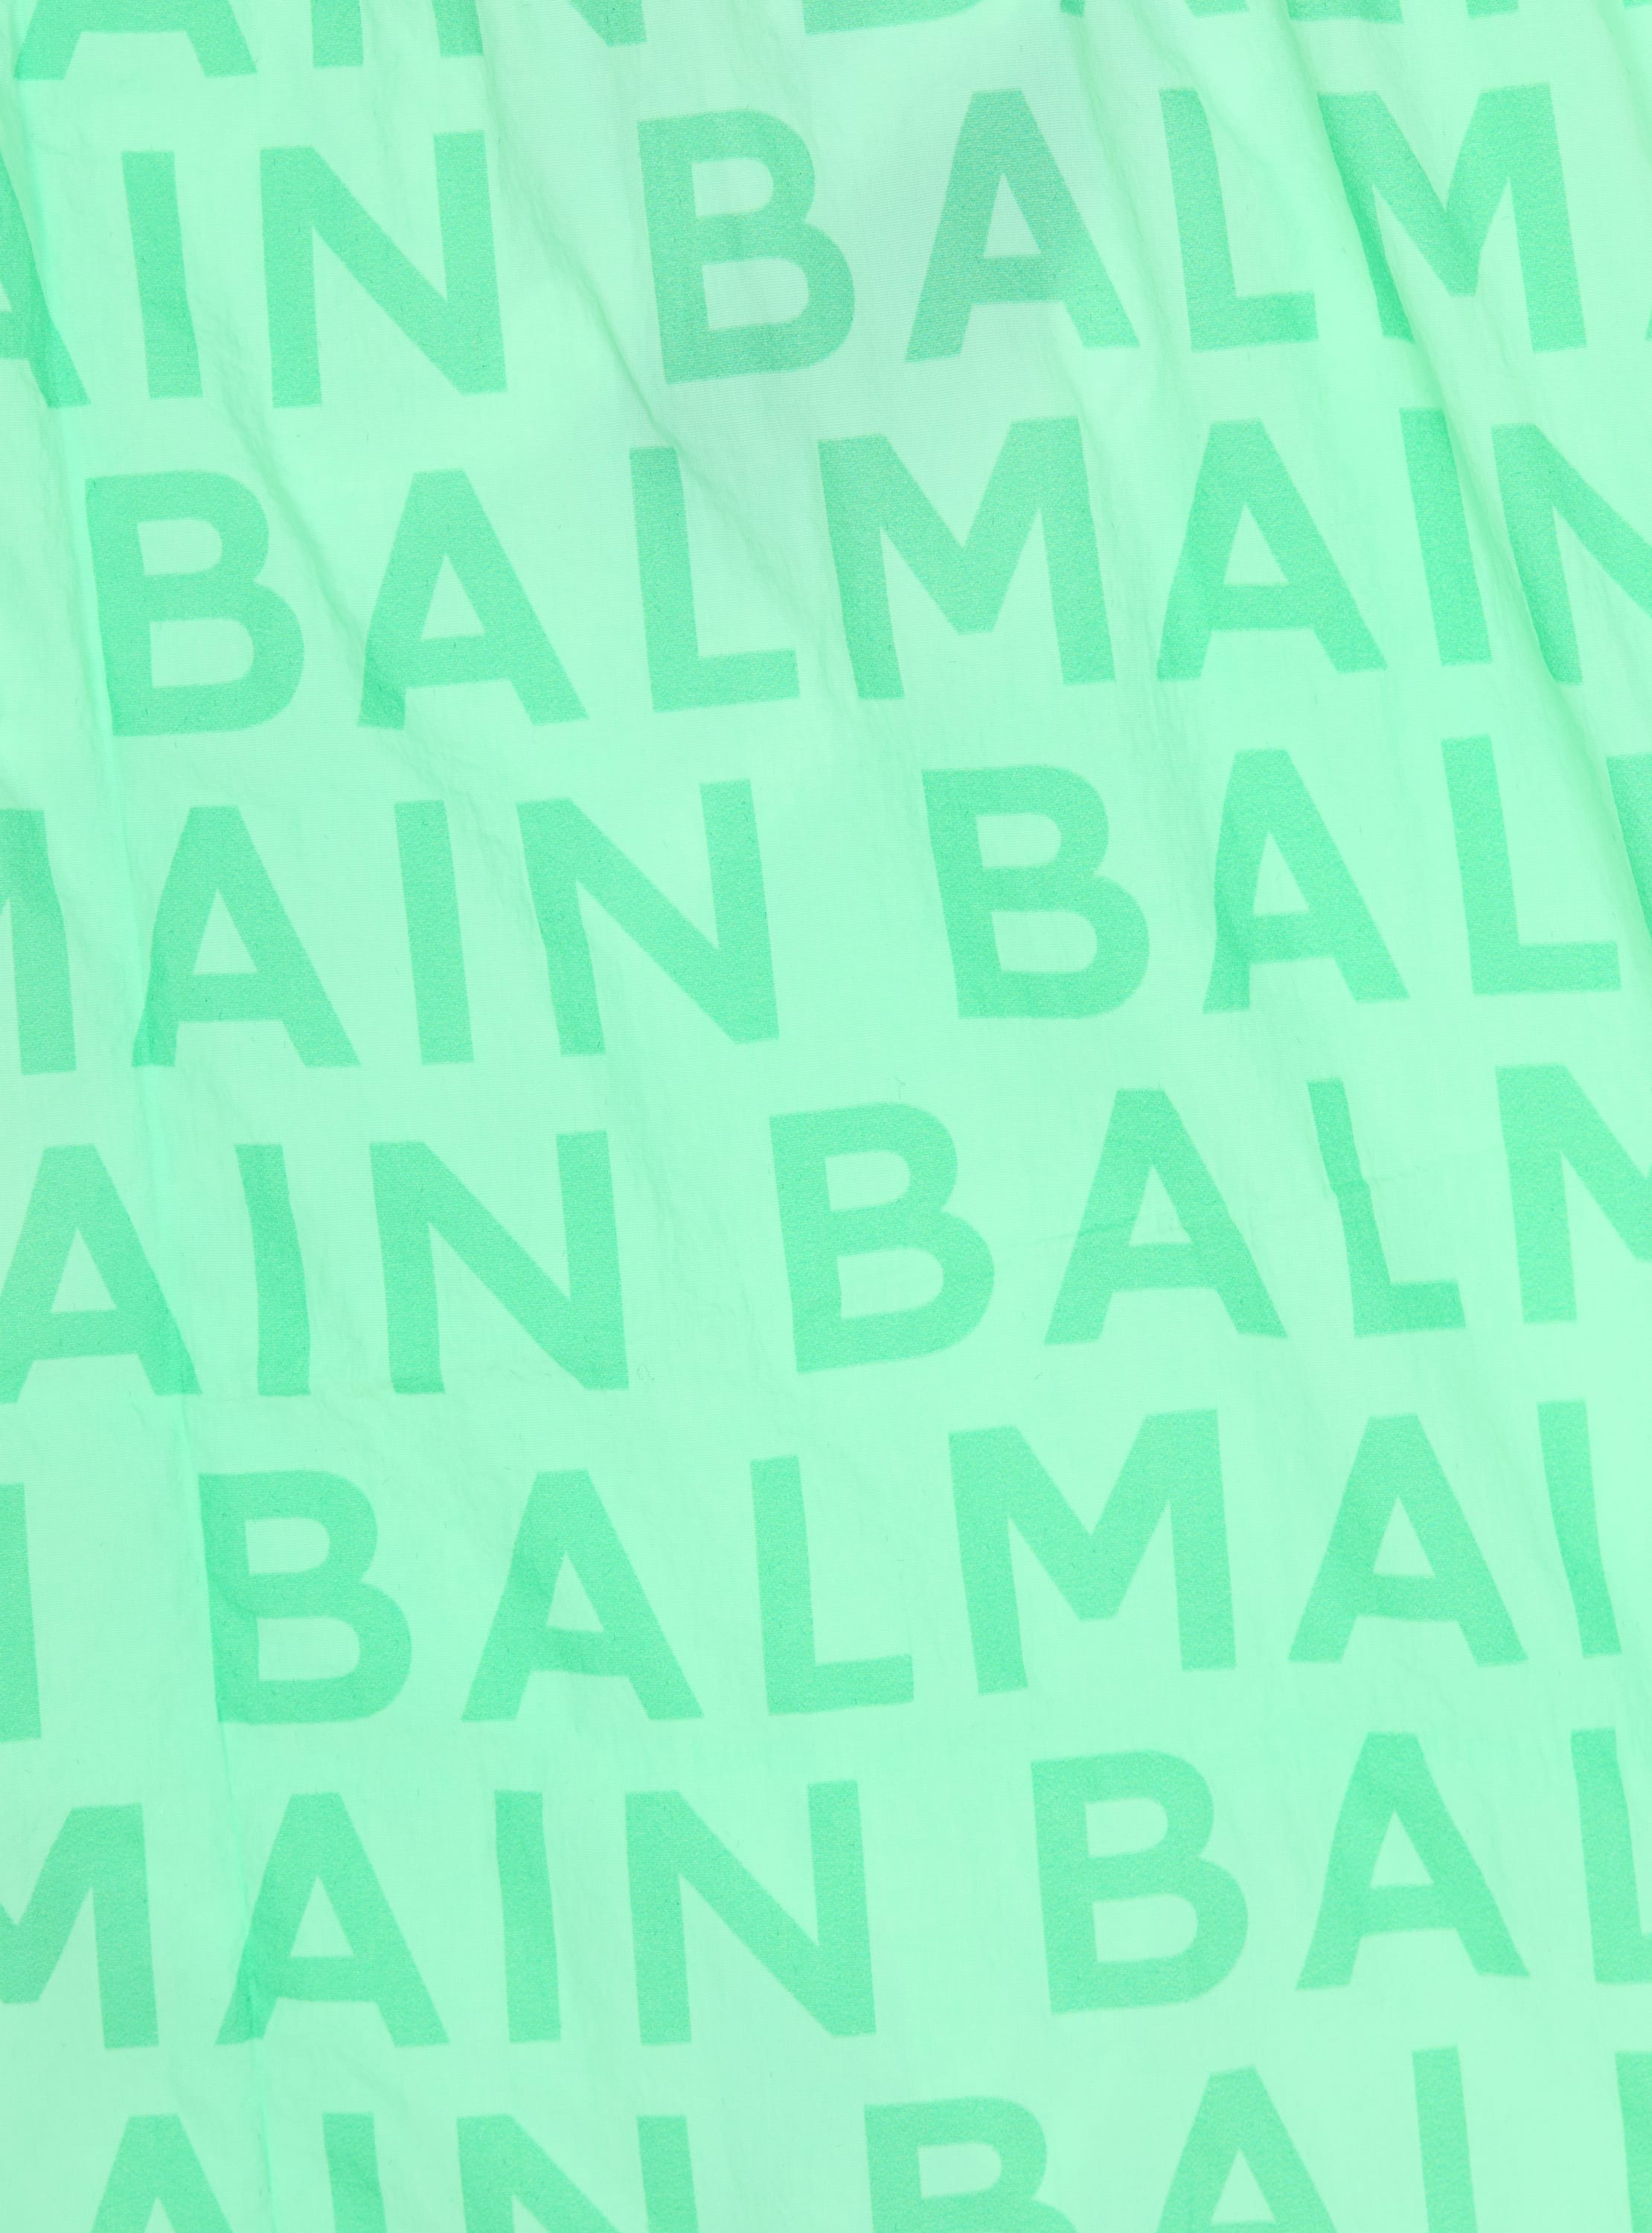 Shorts de baño con logotipo de Balmain 